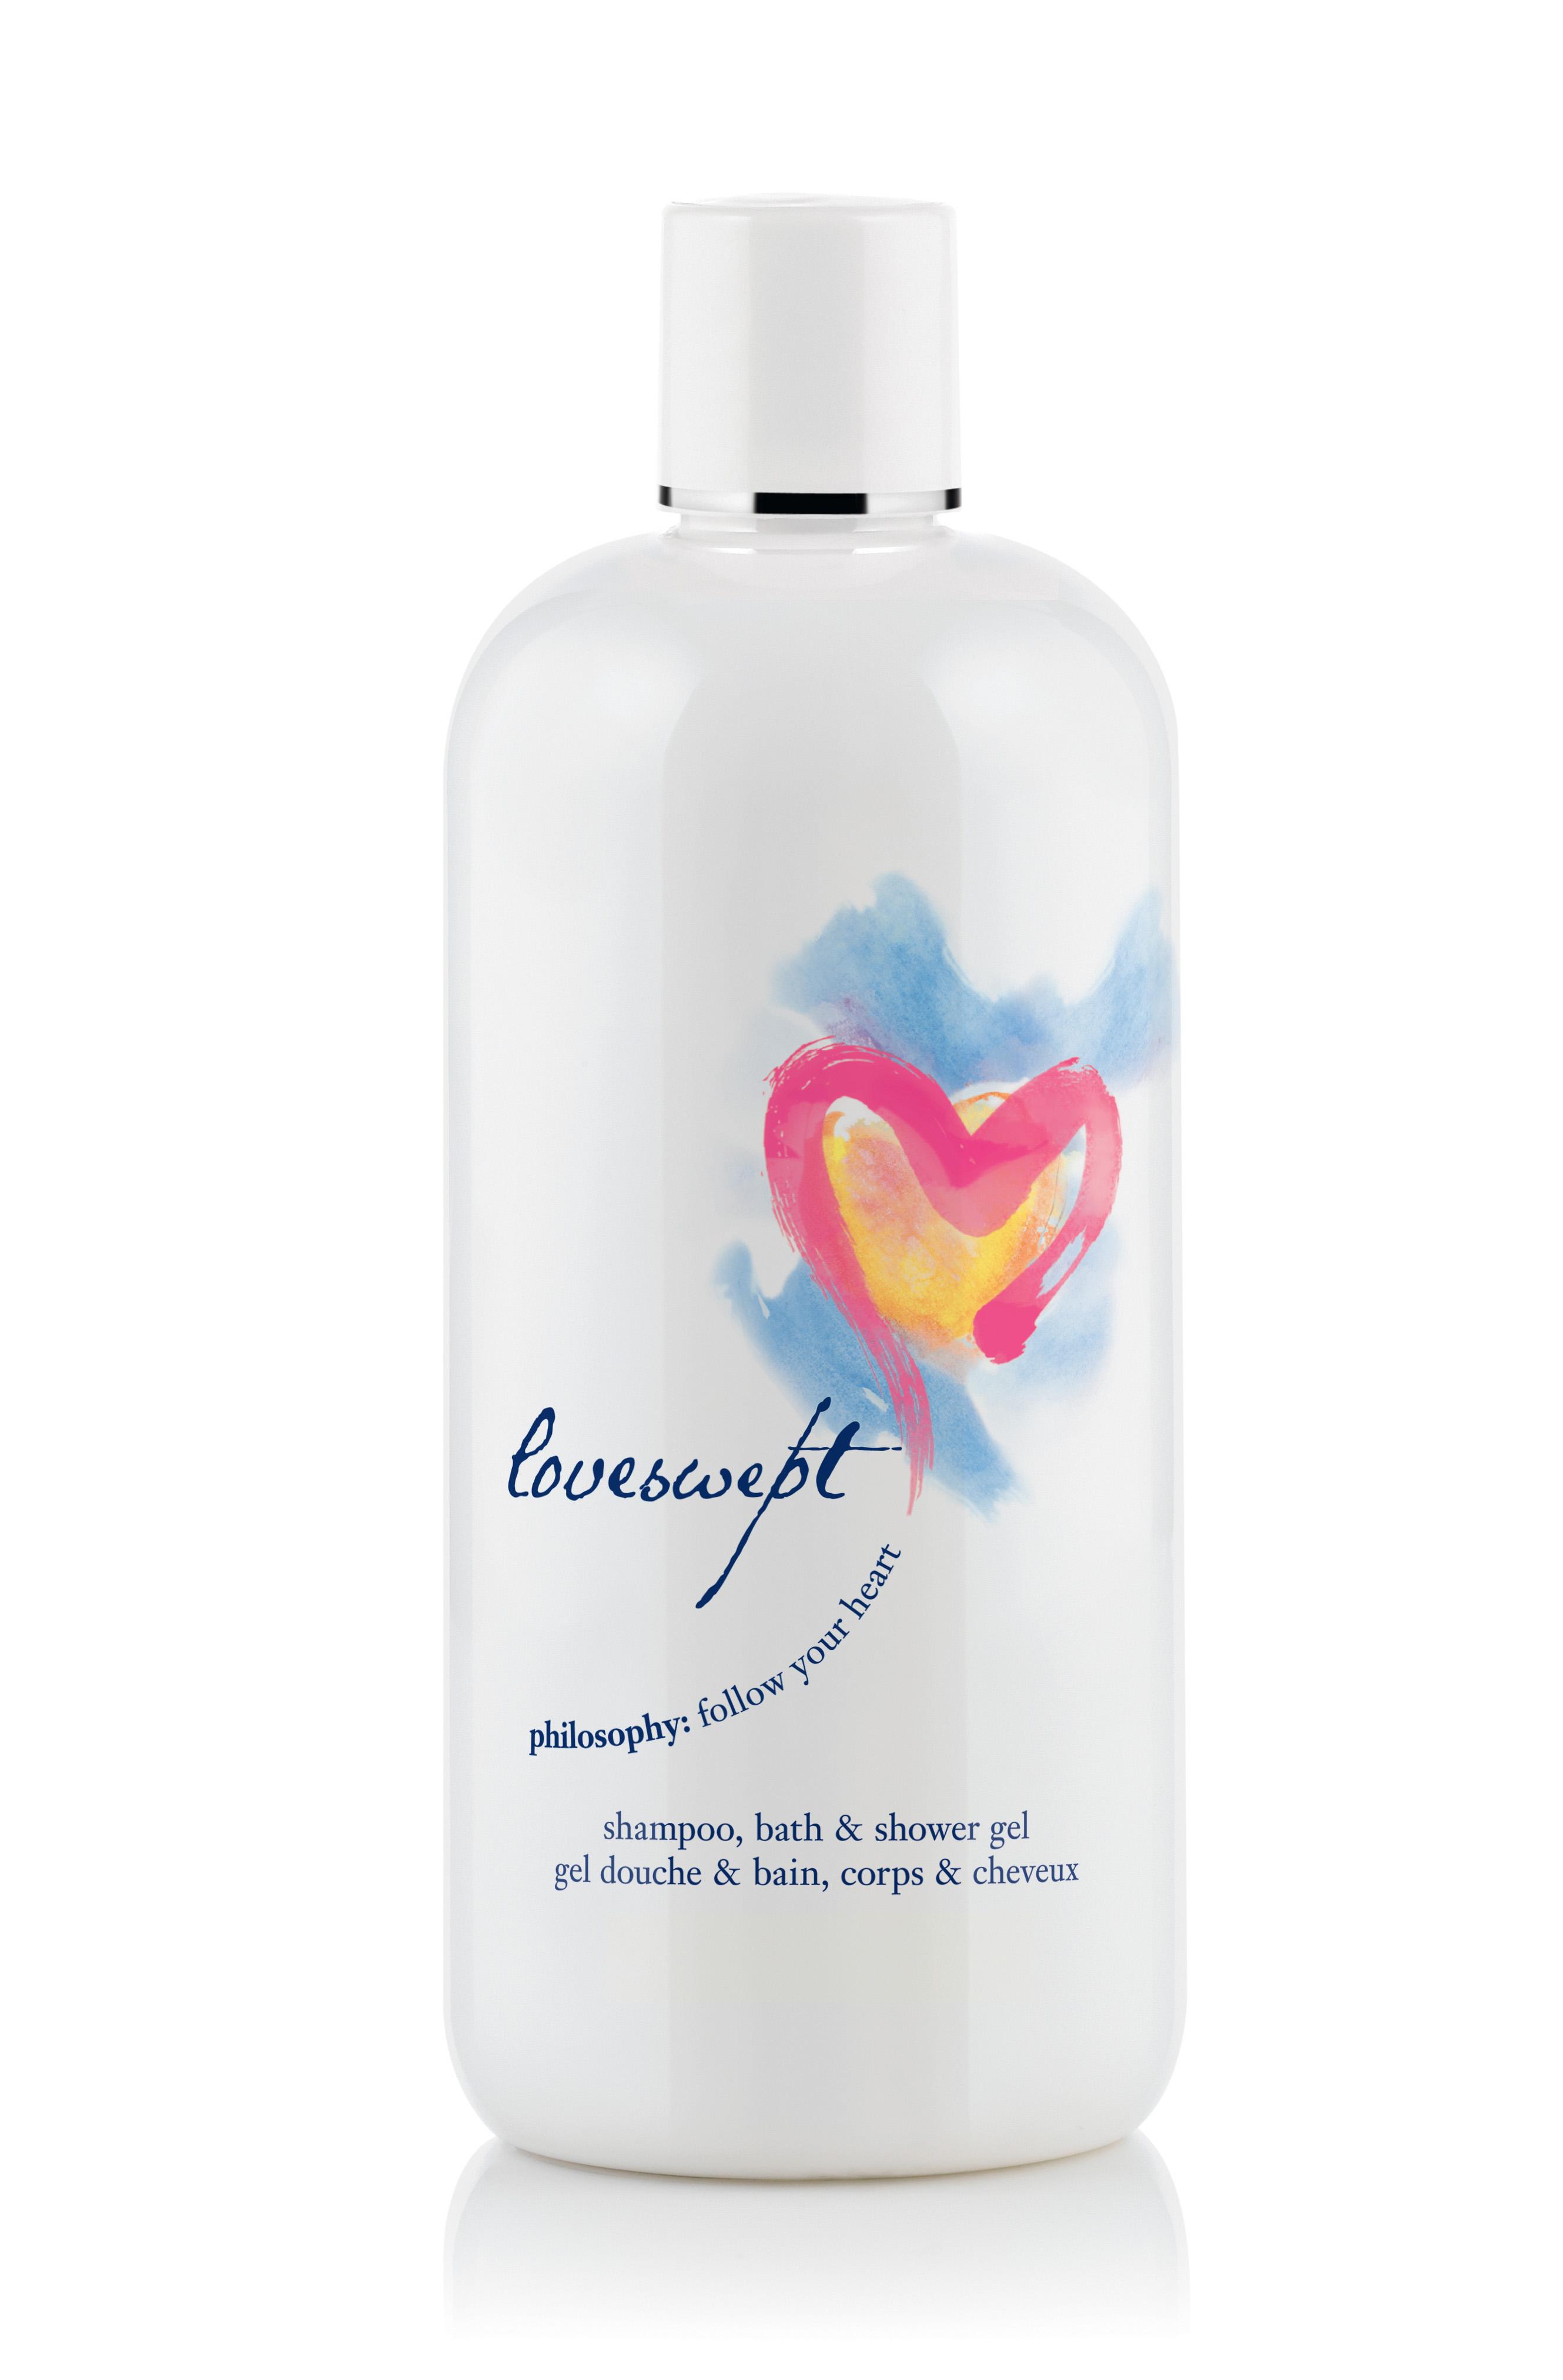 Loveswept shampoo